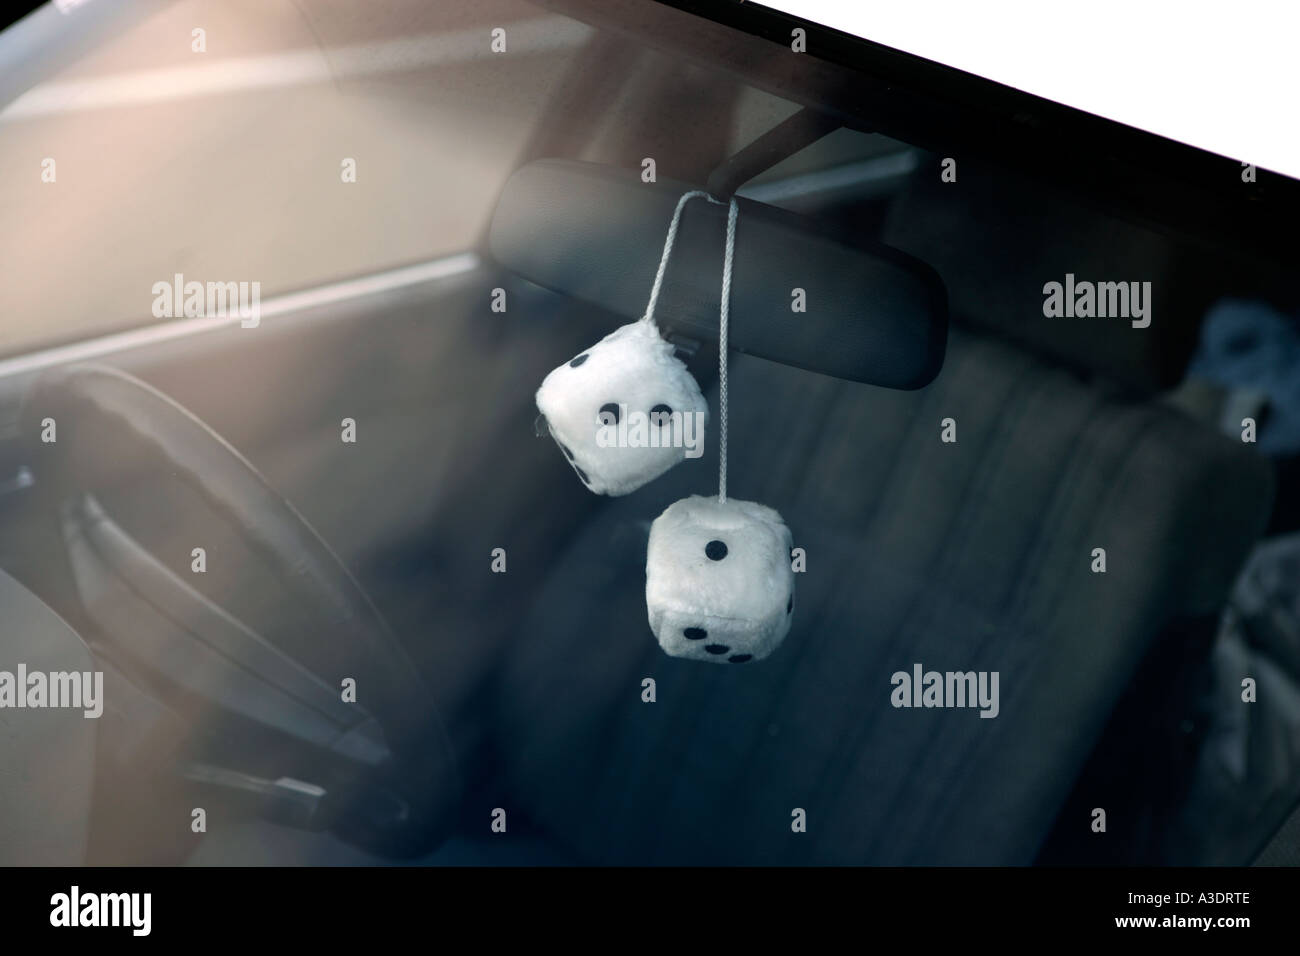 Zwei flauschige Würfel Rückspiegel eines Autos, gesehen durch die  Windschutzscheibe hängen Stockfotografie - Alamy